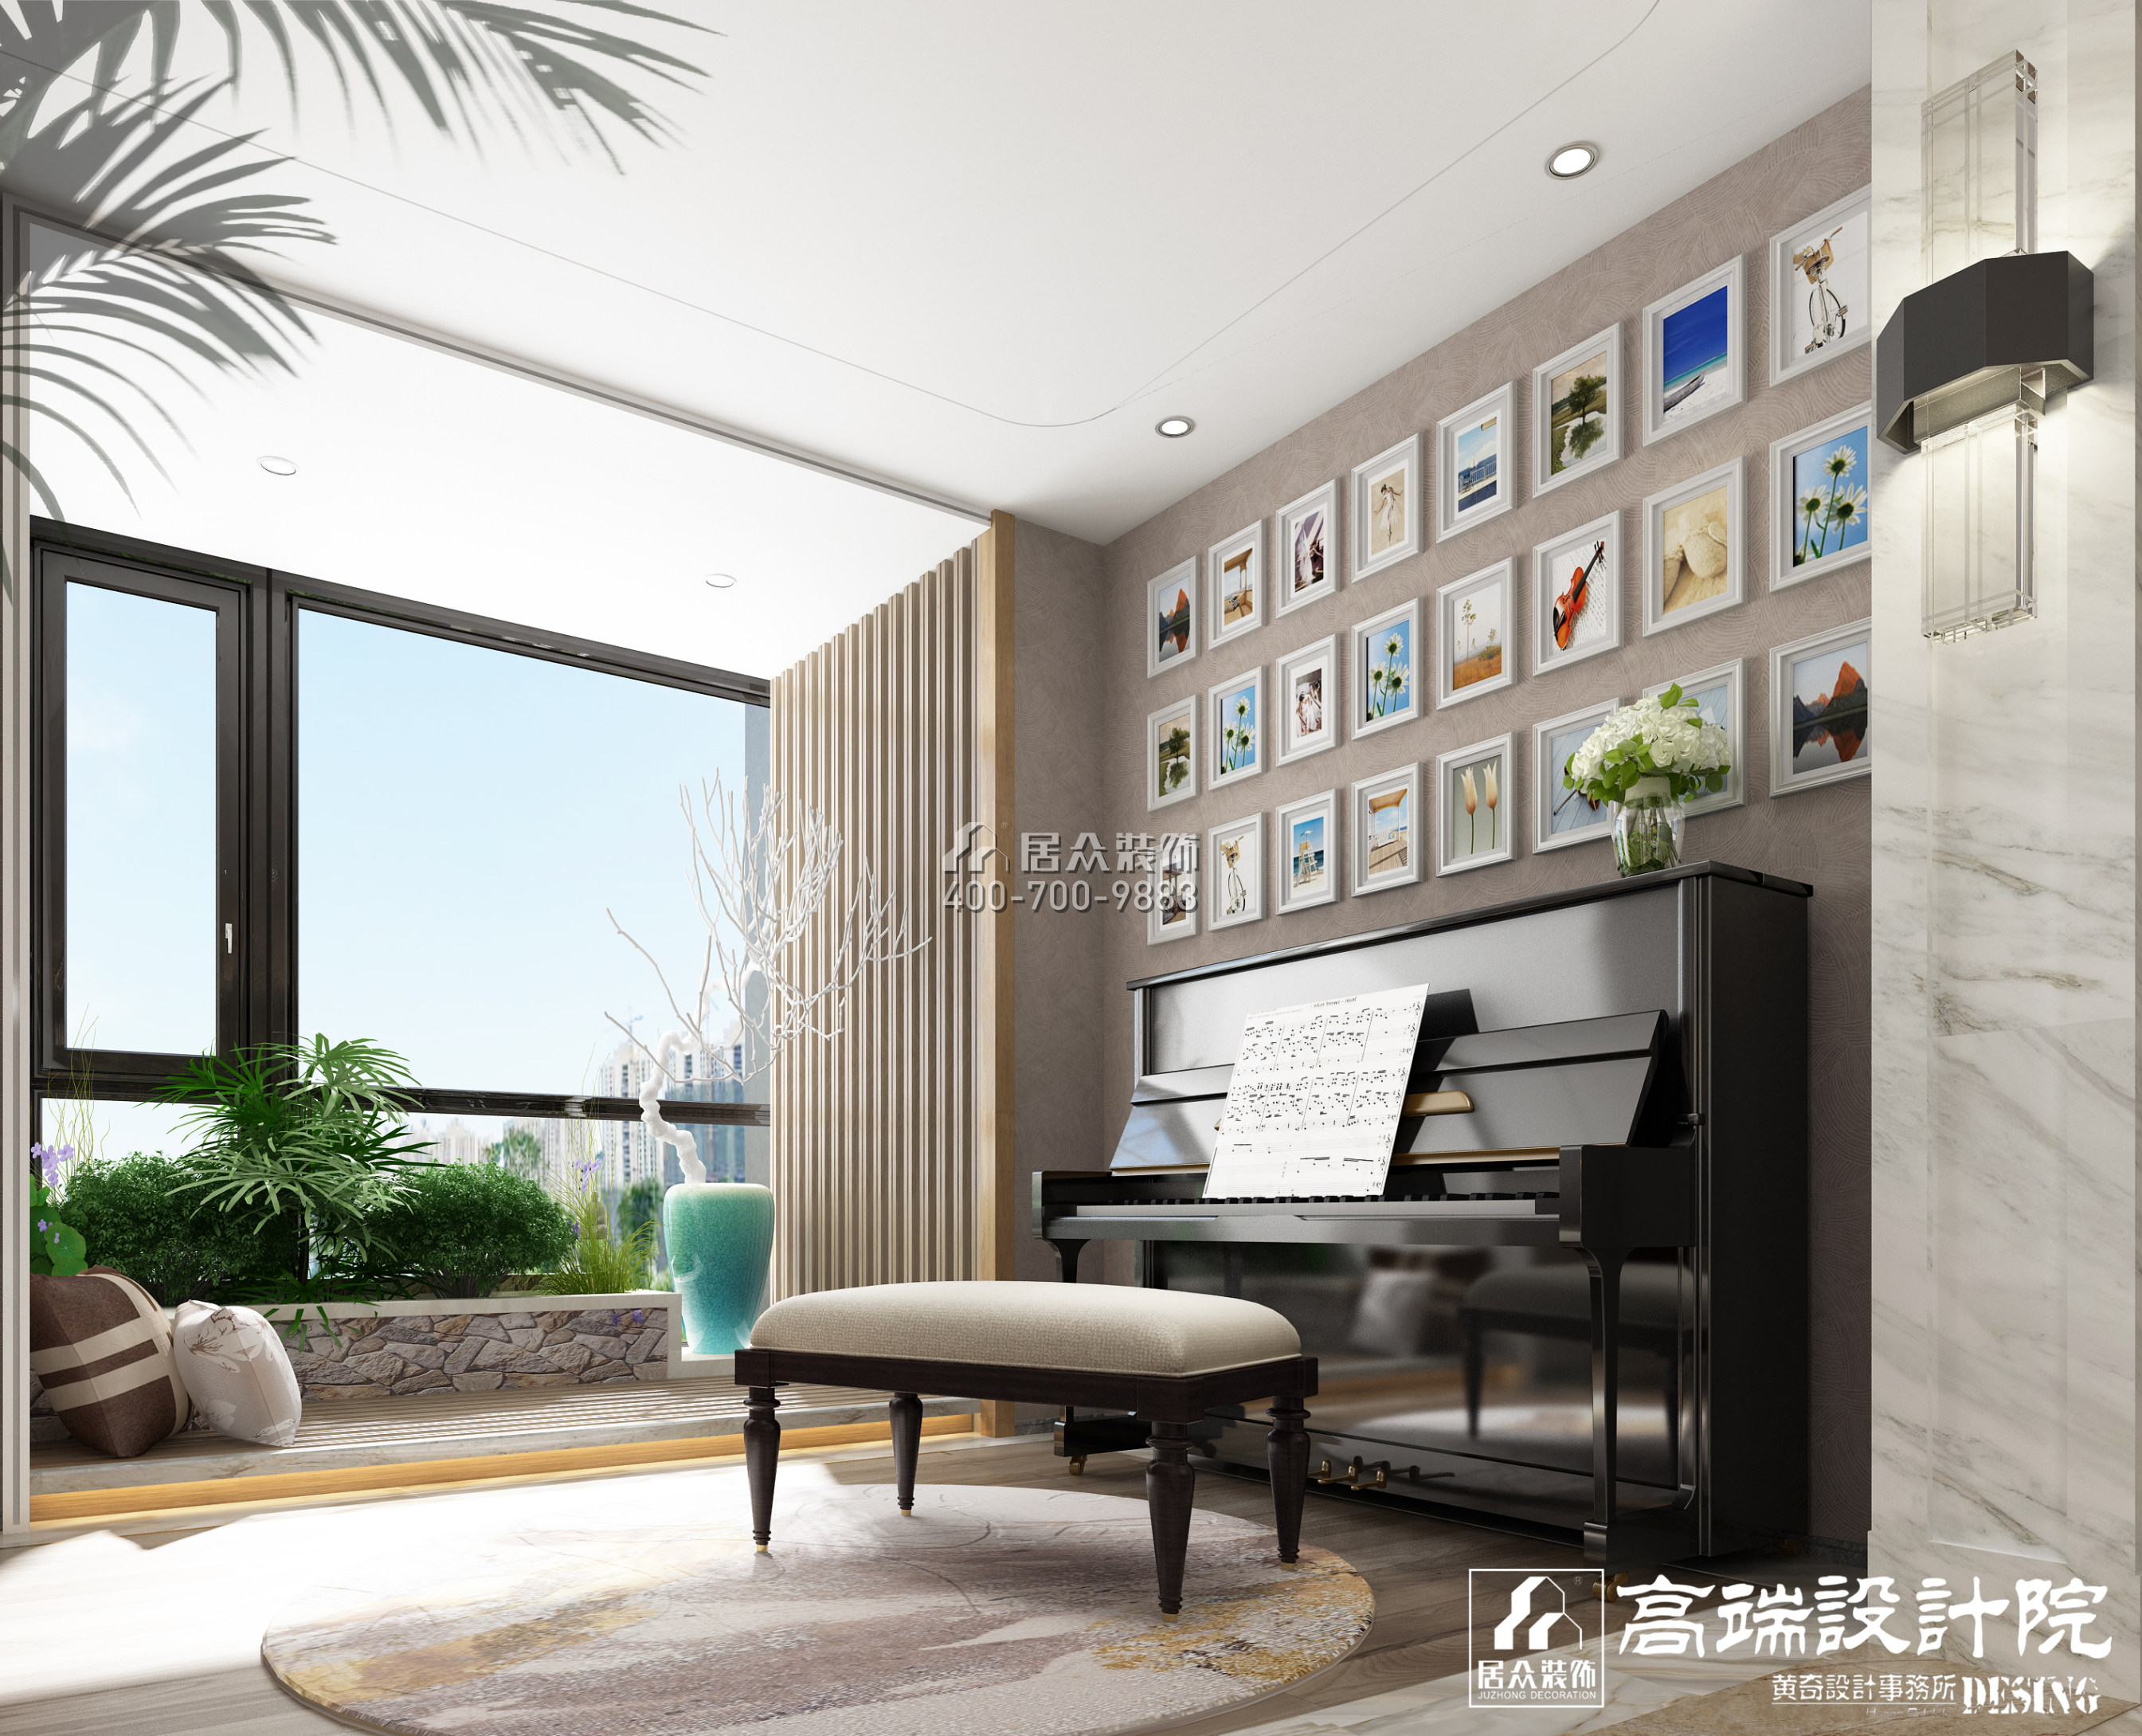 湘江一号320平方米现代简约风格平层户型娱乐室装修效果图